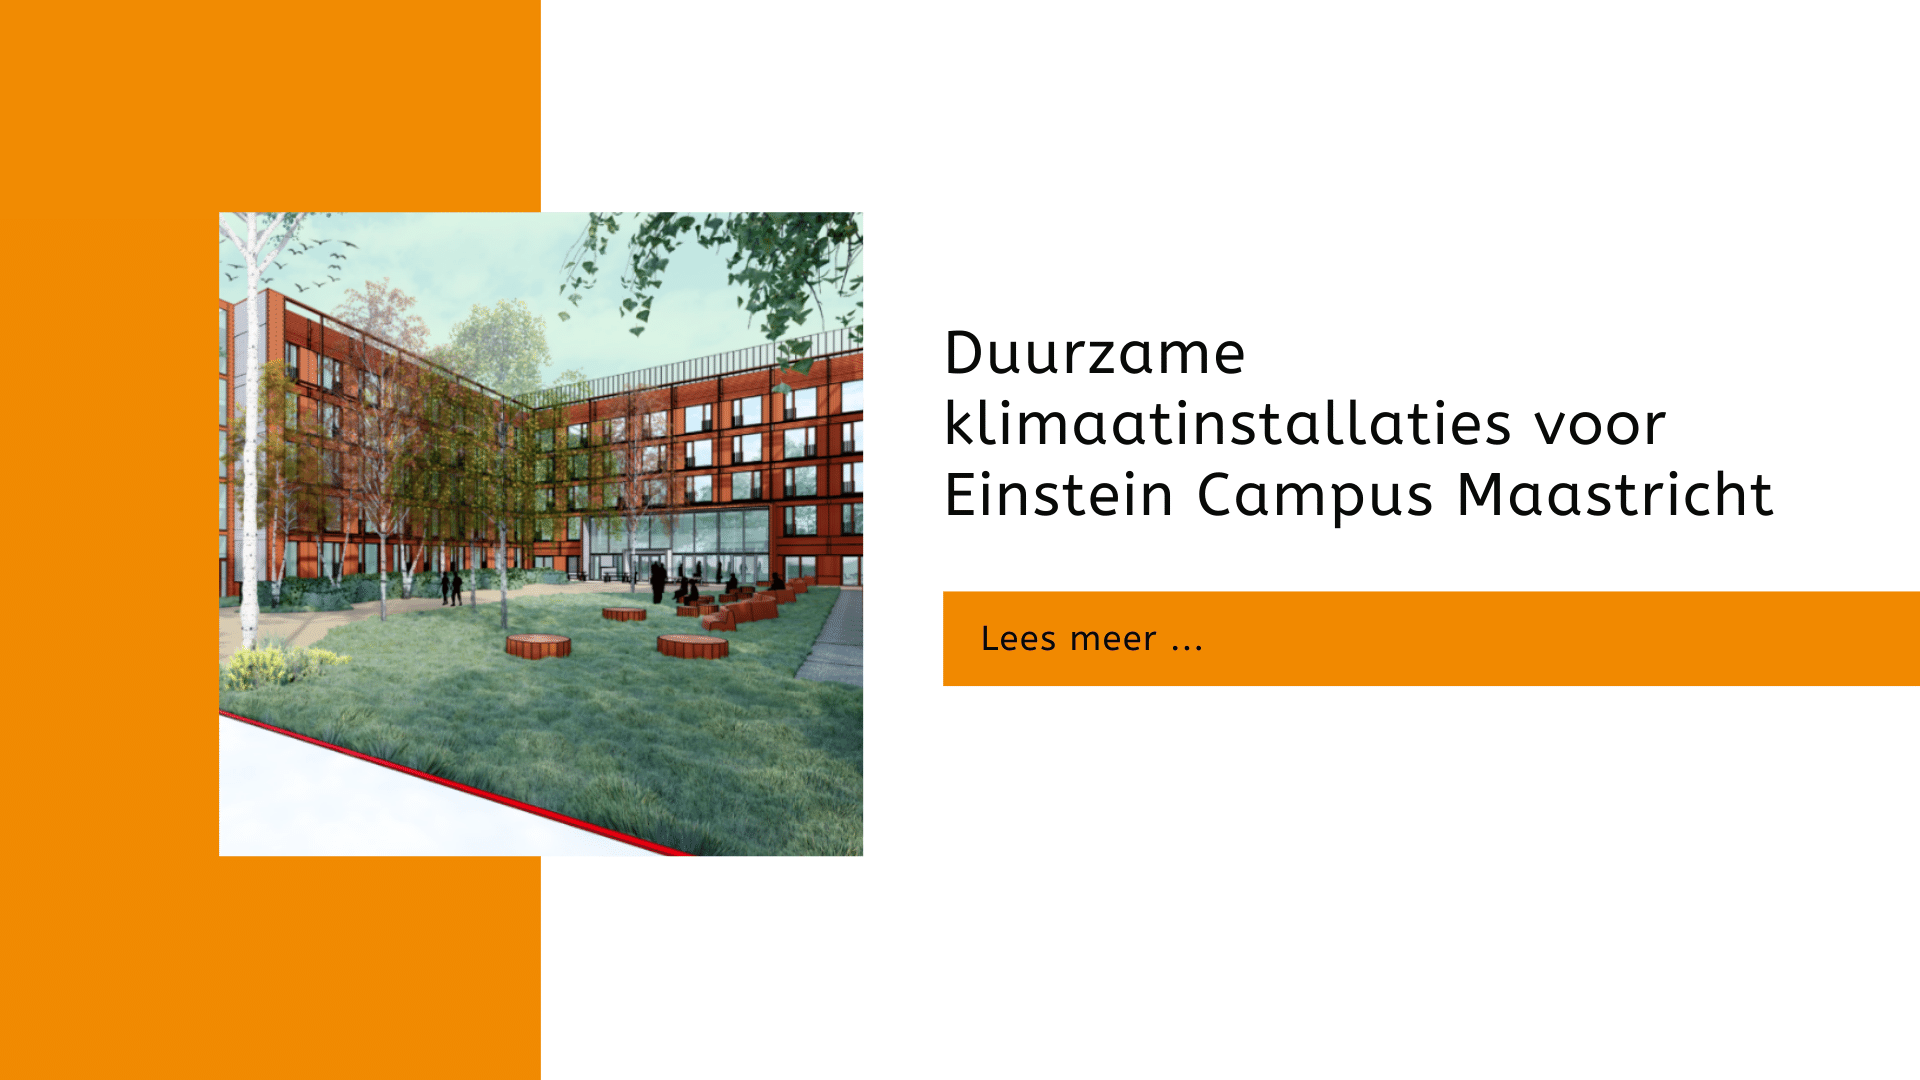 Duurzame klimaatinstallaties voor Einstein Campus Maastricht